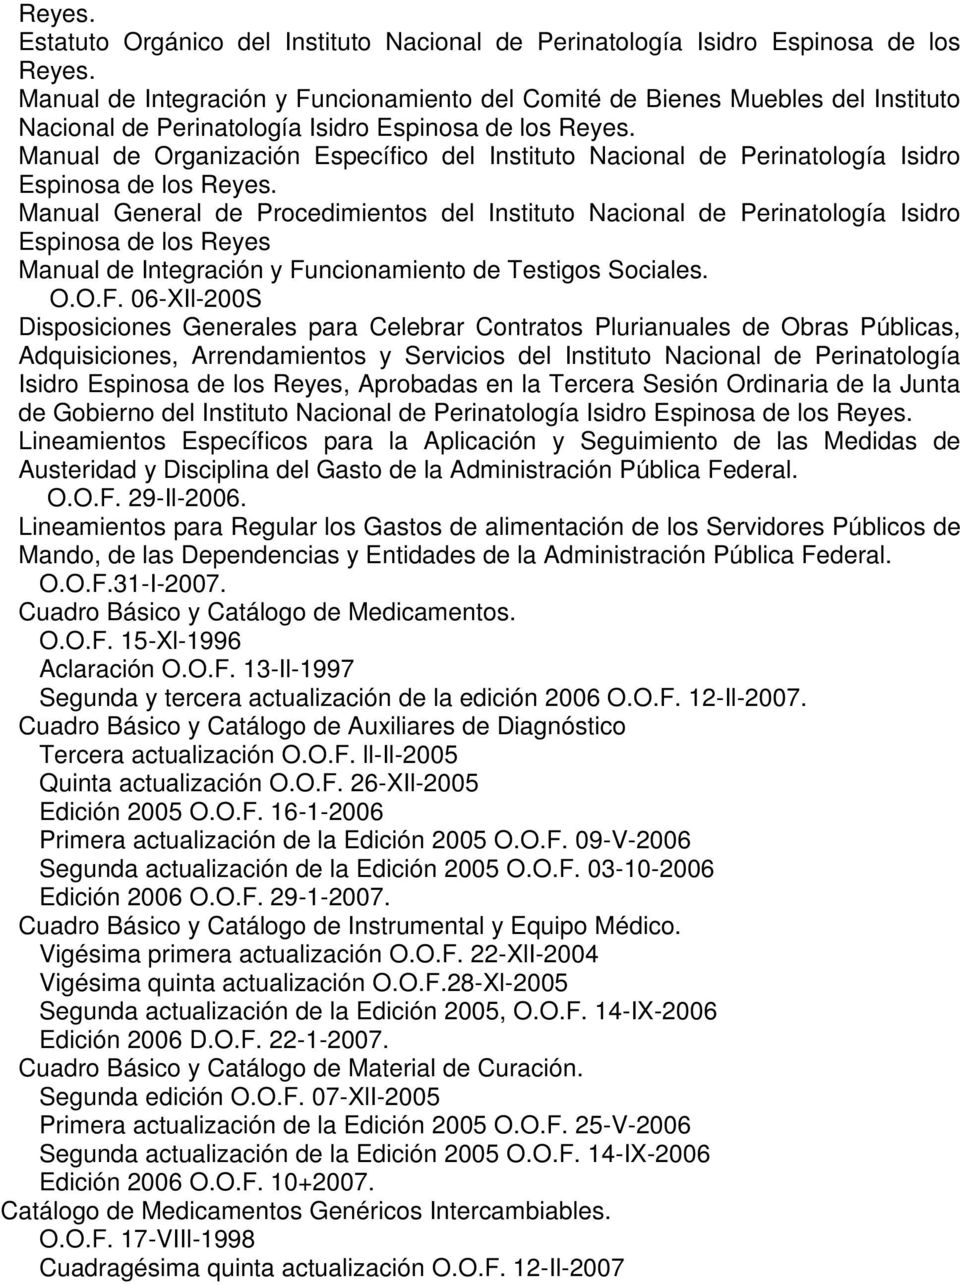 Manual de Organización Específico del Instituto Nacional de Perinatología Isidro Espinosa de los Reyes.